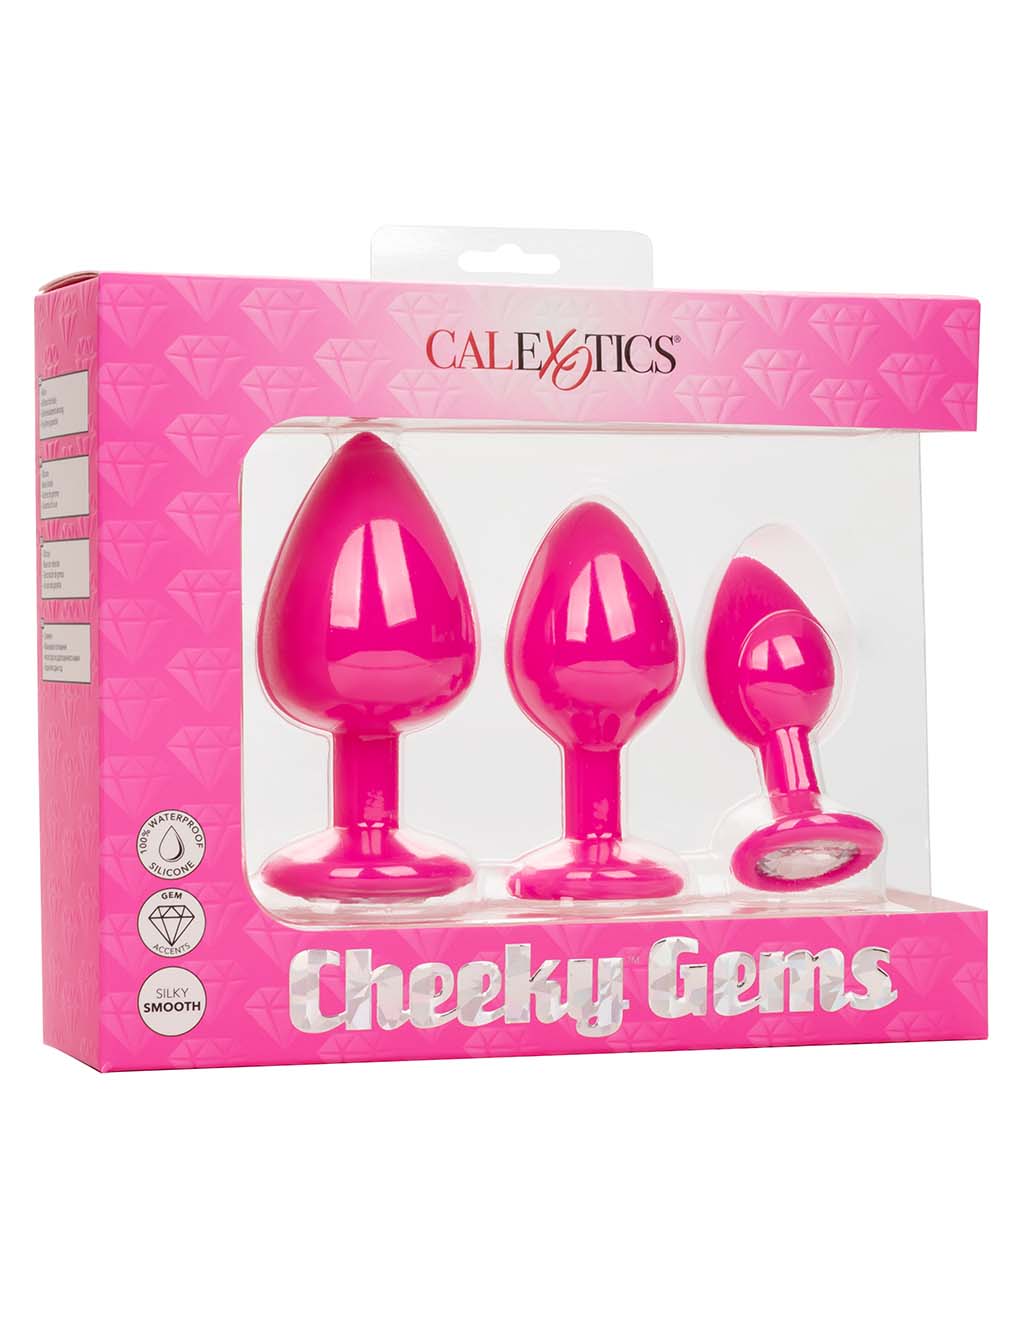 Cheeky Gems- Box